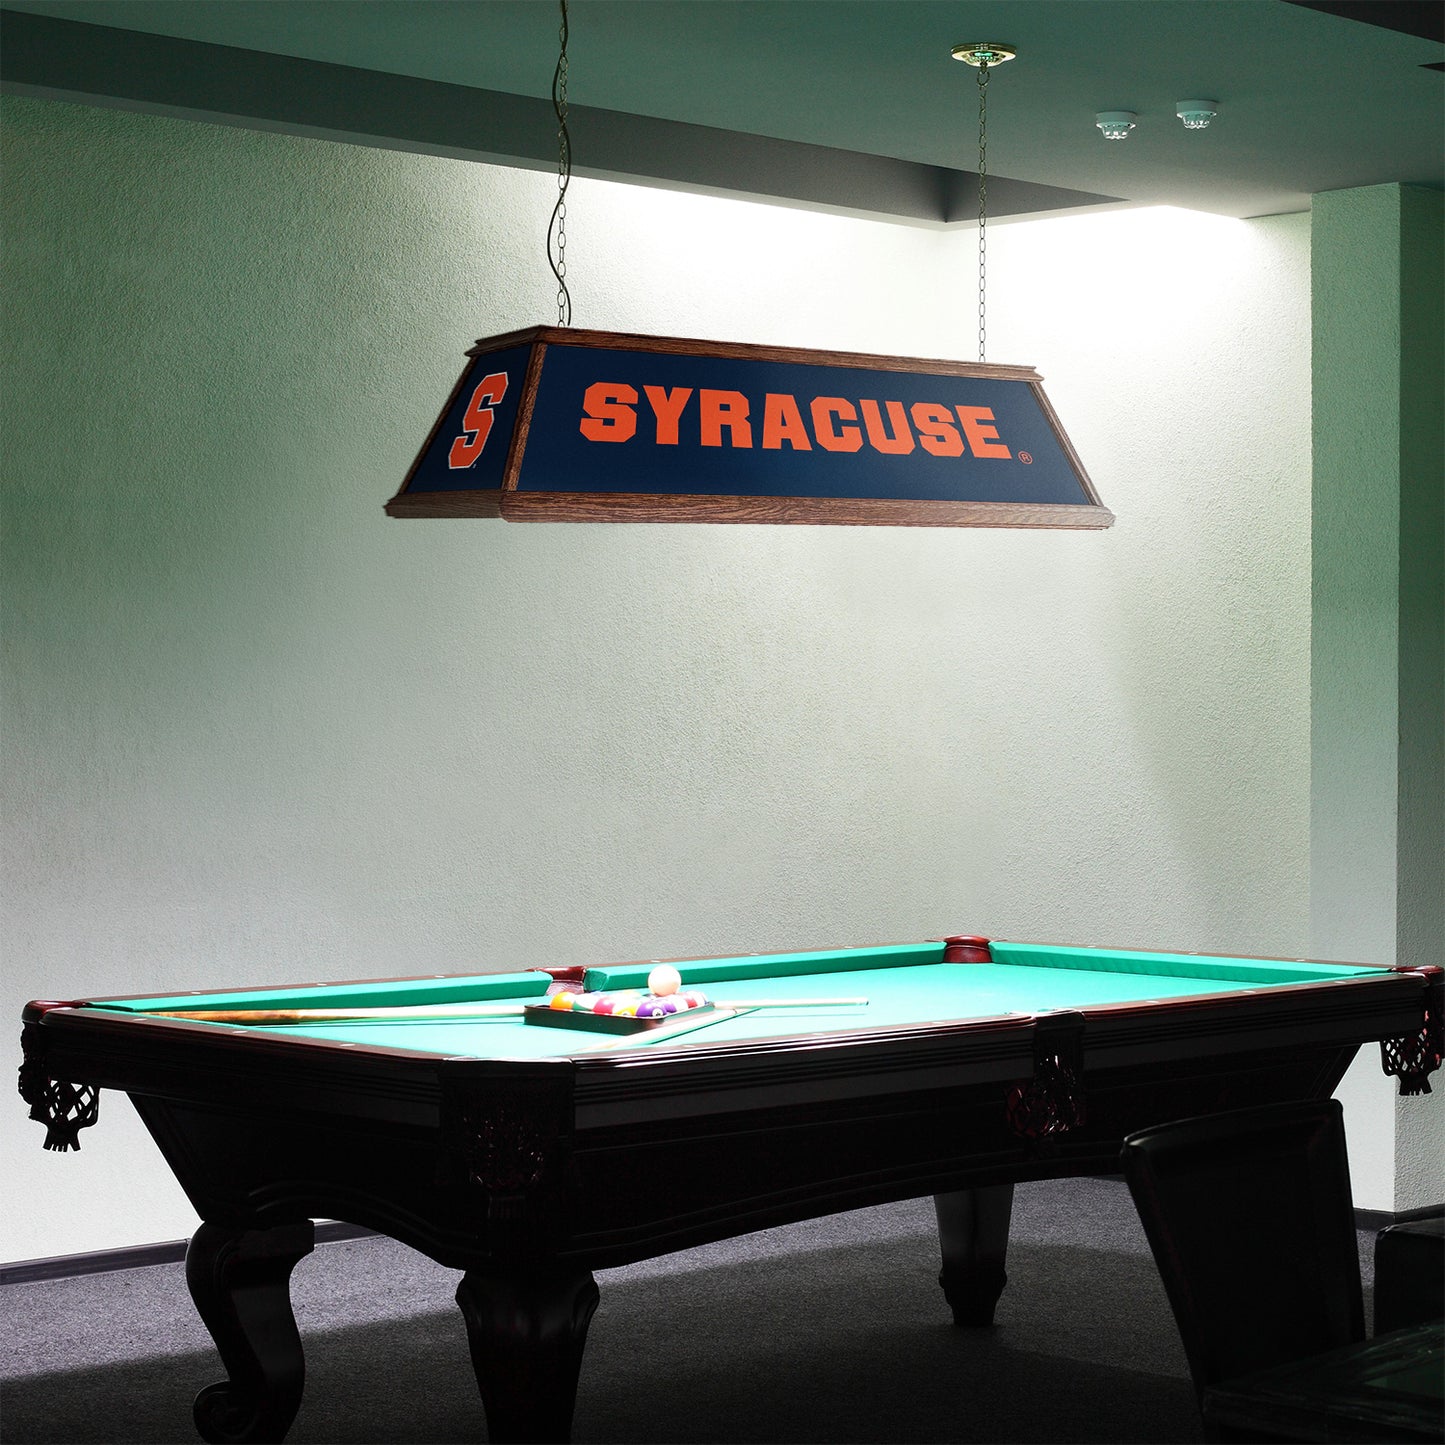 Syracuse Orange Premium Pool Table Light Room View